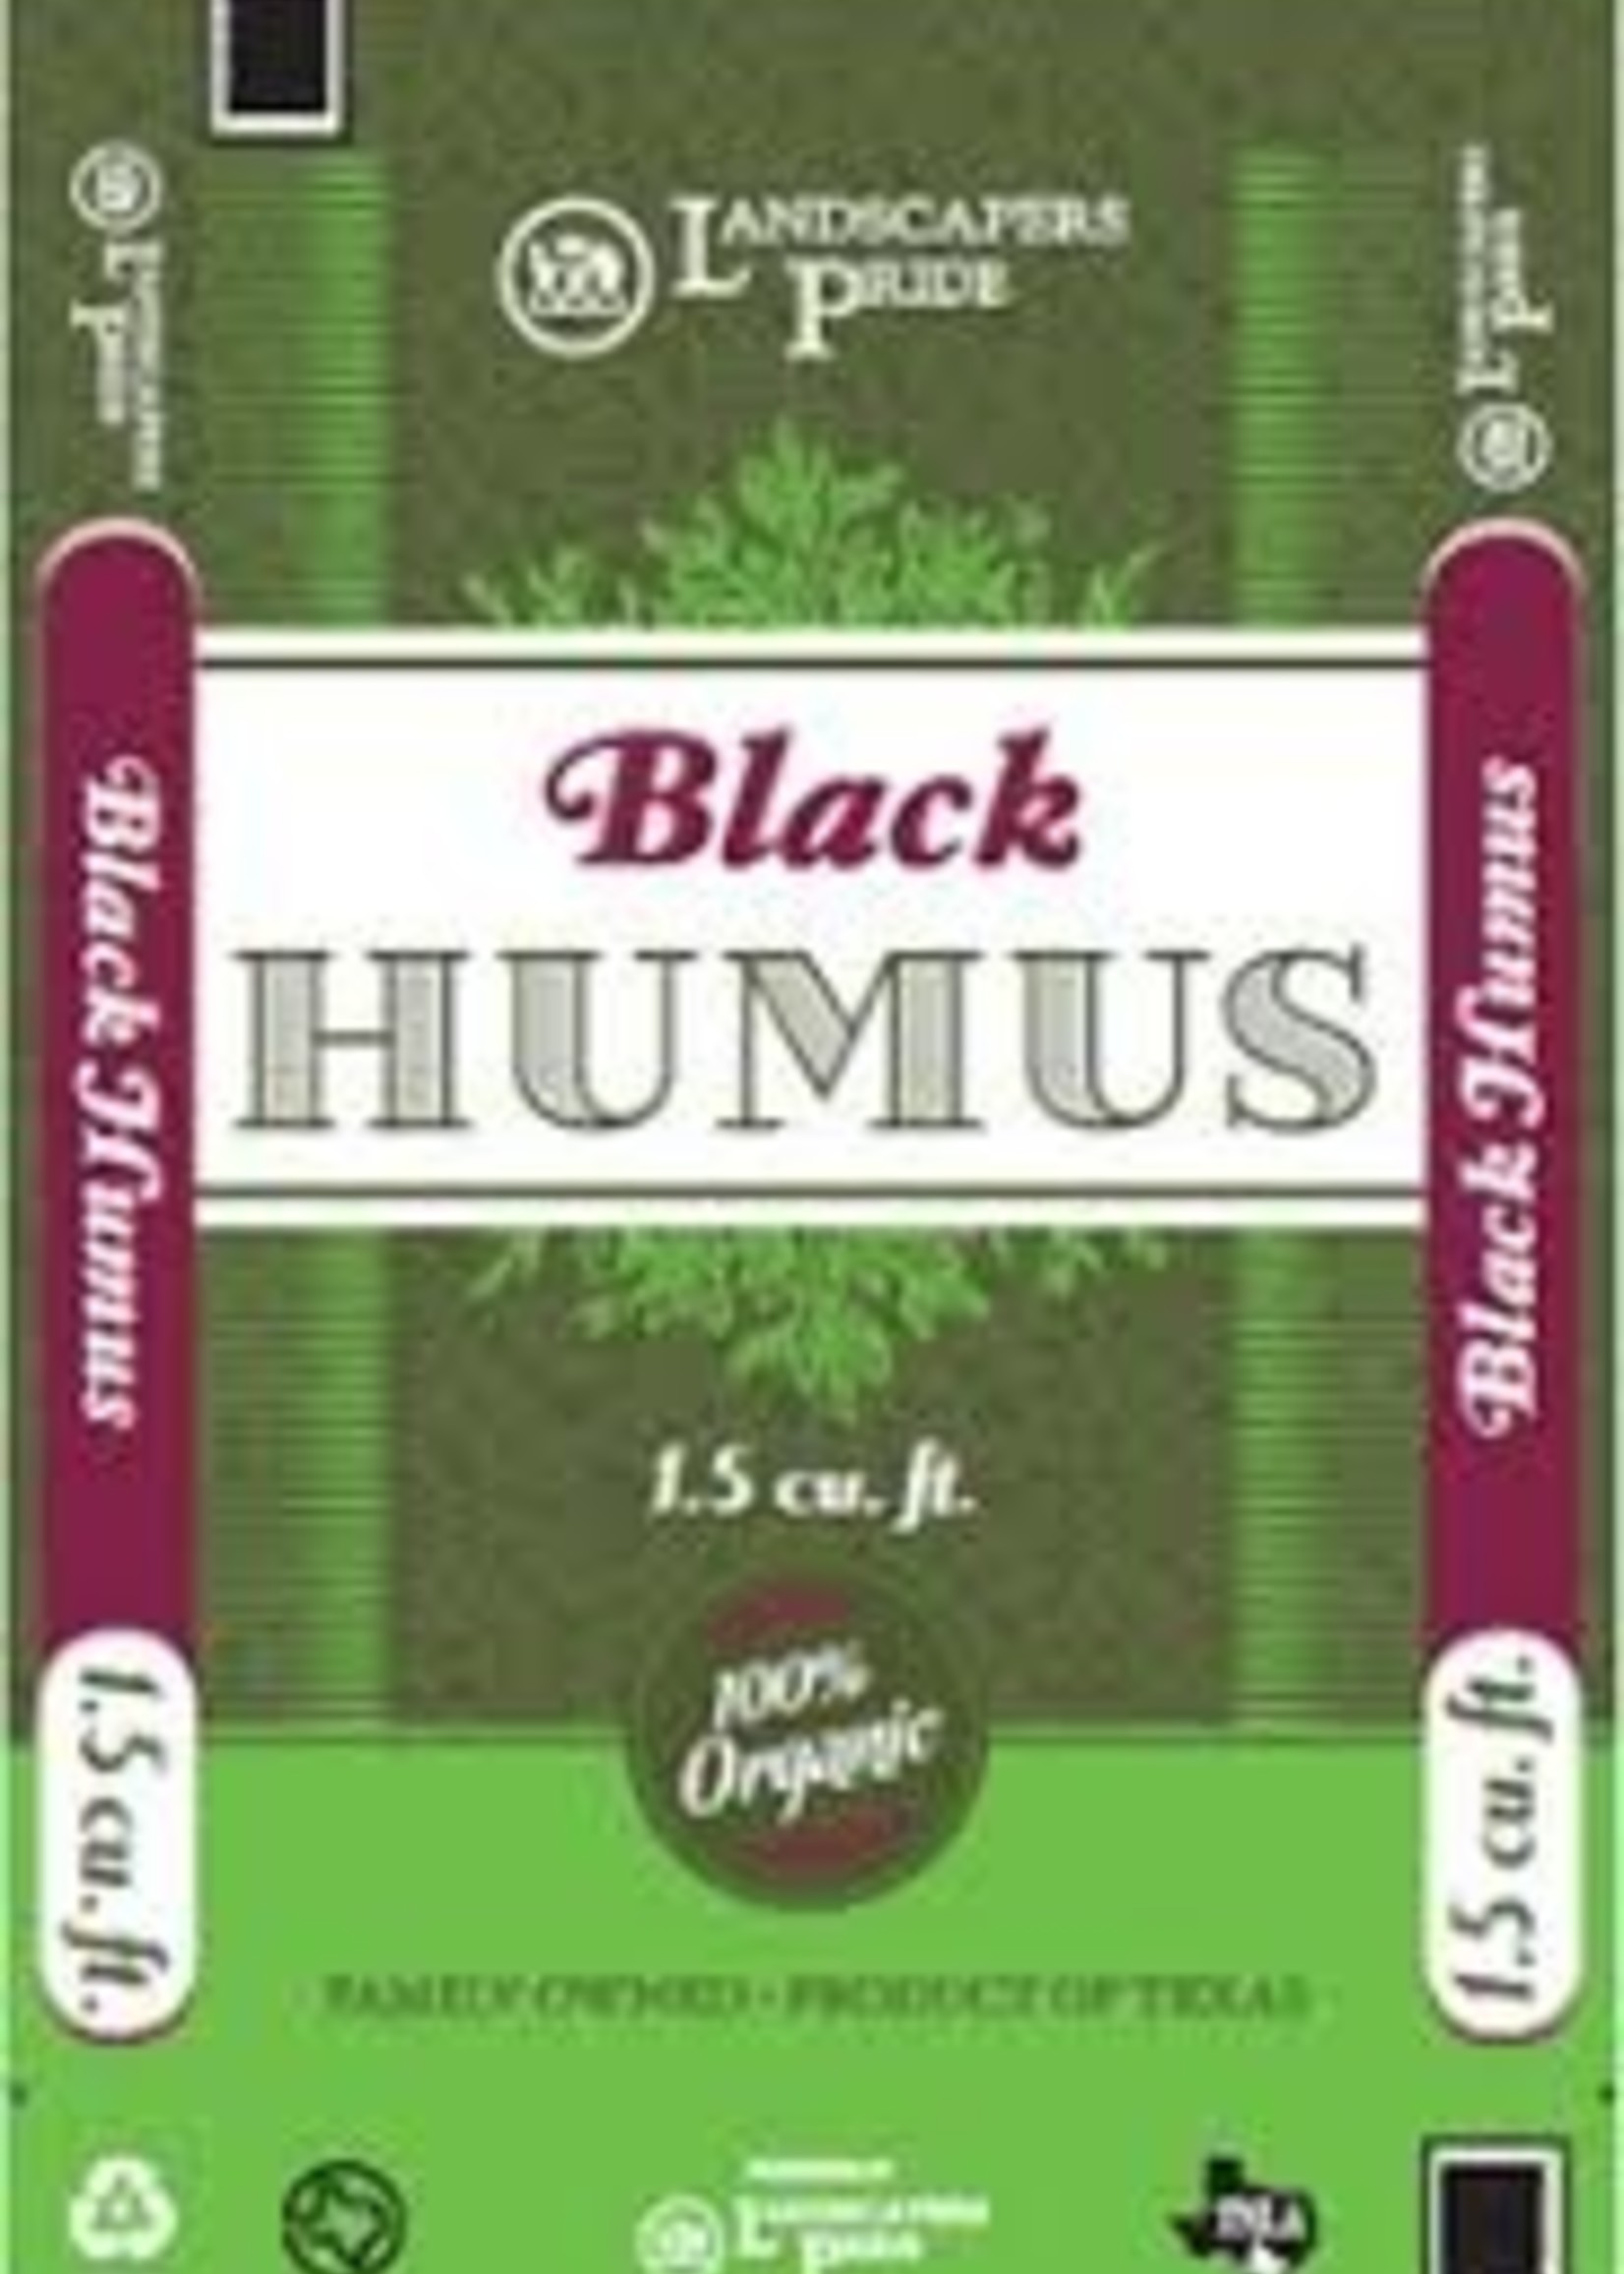 Black Humus 40 lb. $4.99 ea.